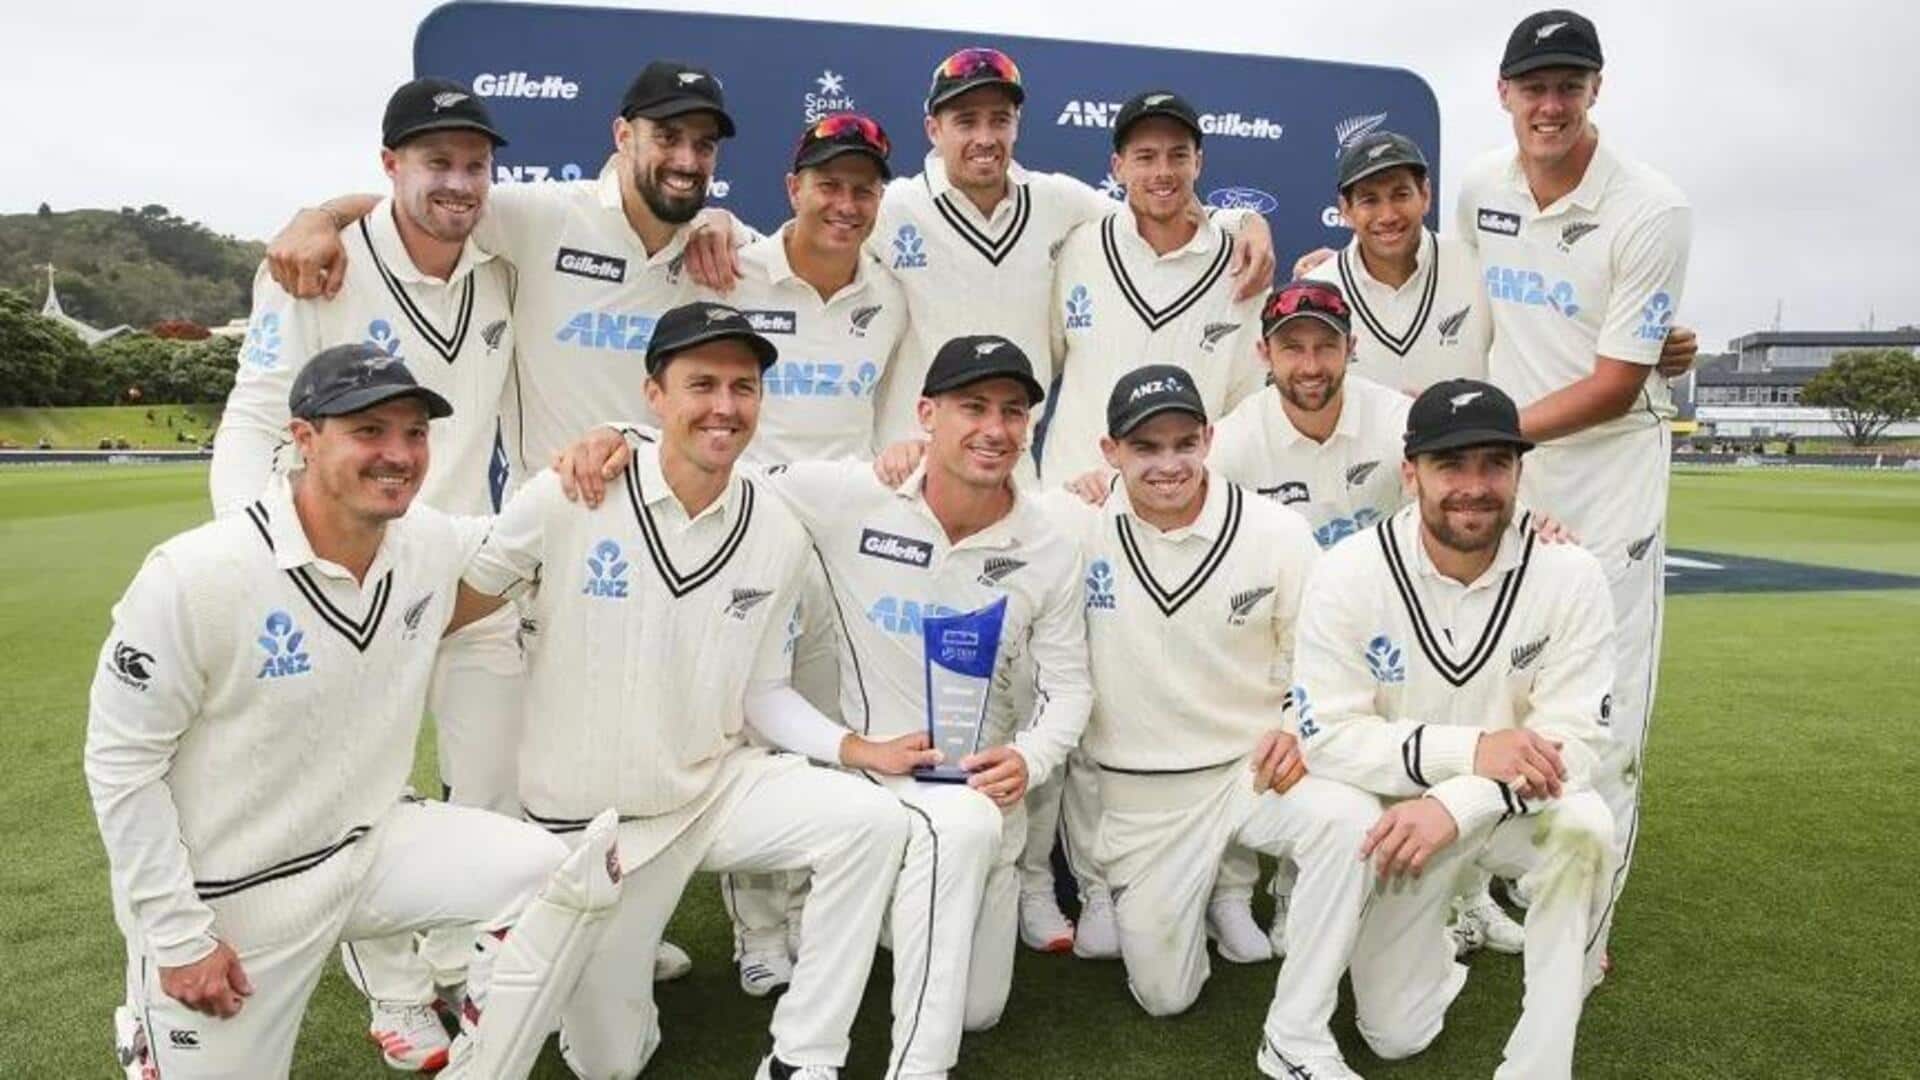 दक्षिण अफ्रीका के खिलाफ टेस्ट सीरीज के लिए न्यूजीलैंड टीम का ऐलान, चोटिल विलियमसन की वापसी 